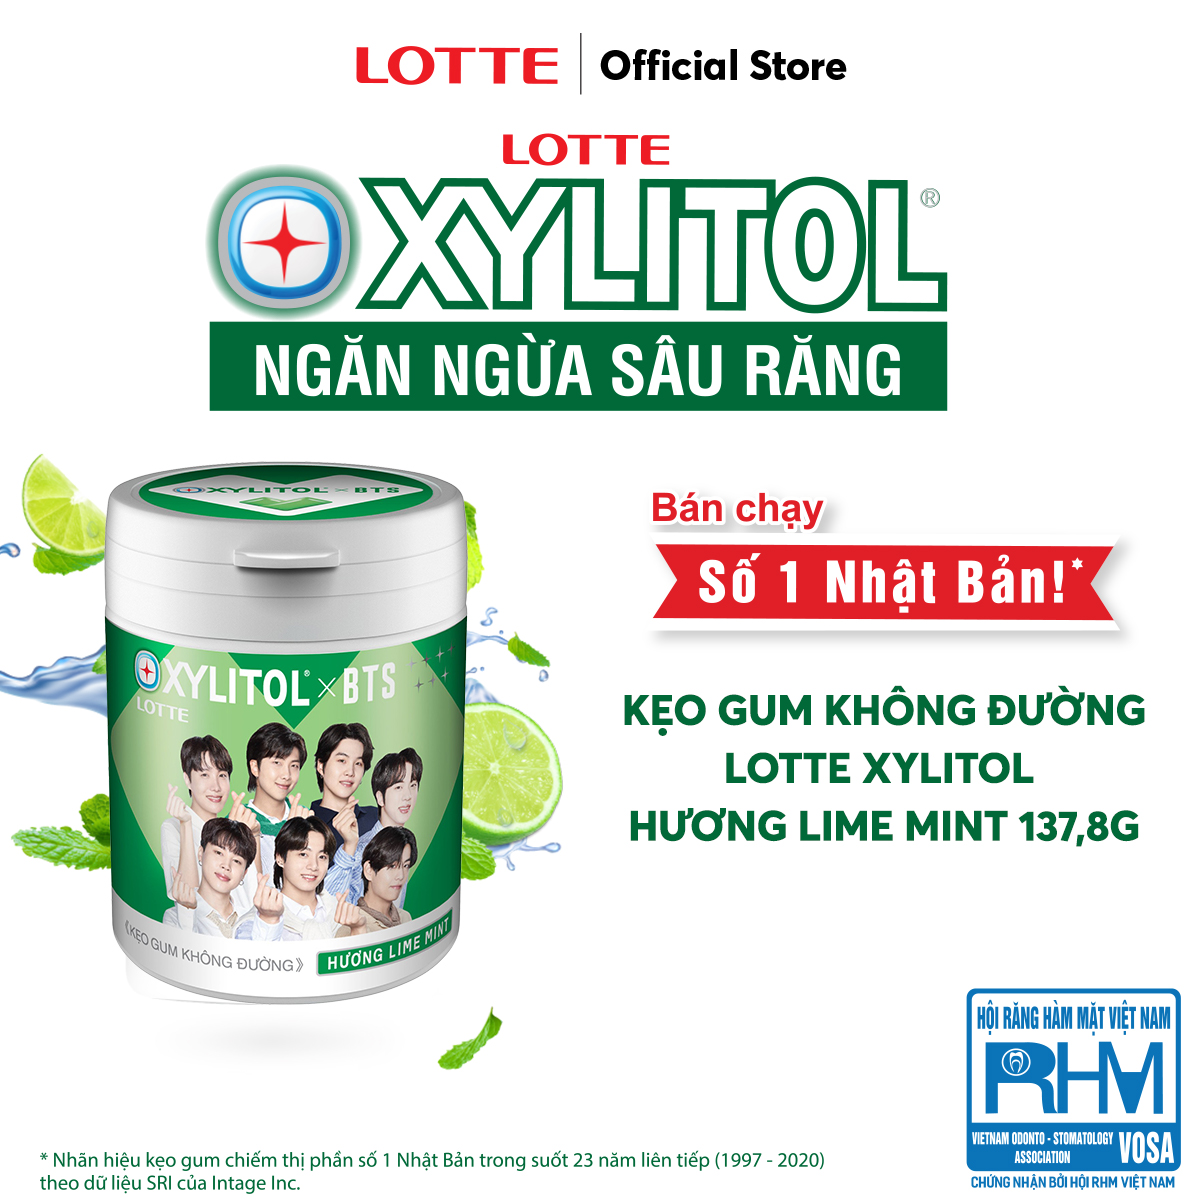 Kẹo Gum không đường Lotte Xylitol - Hương Lime Mint 130,5 g